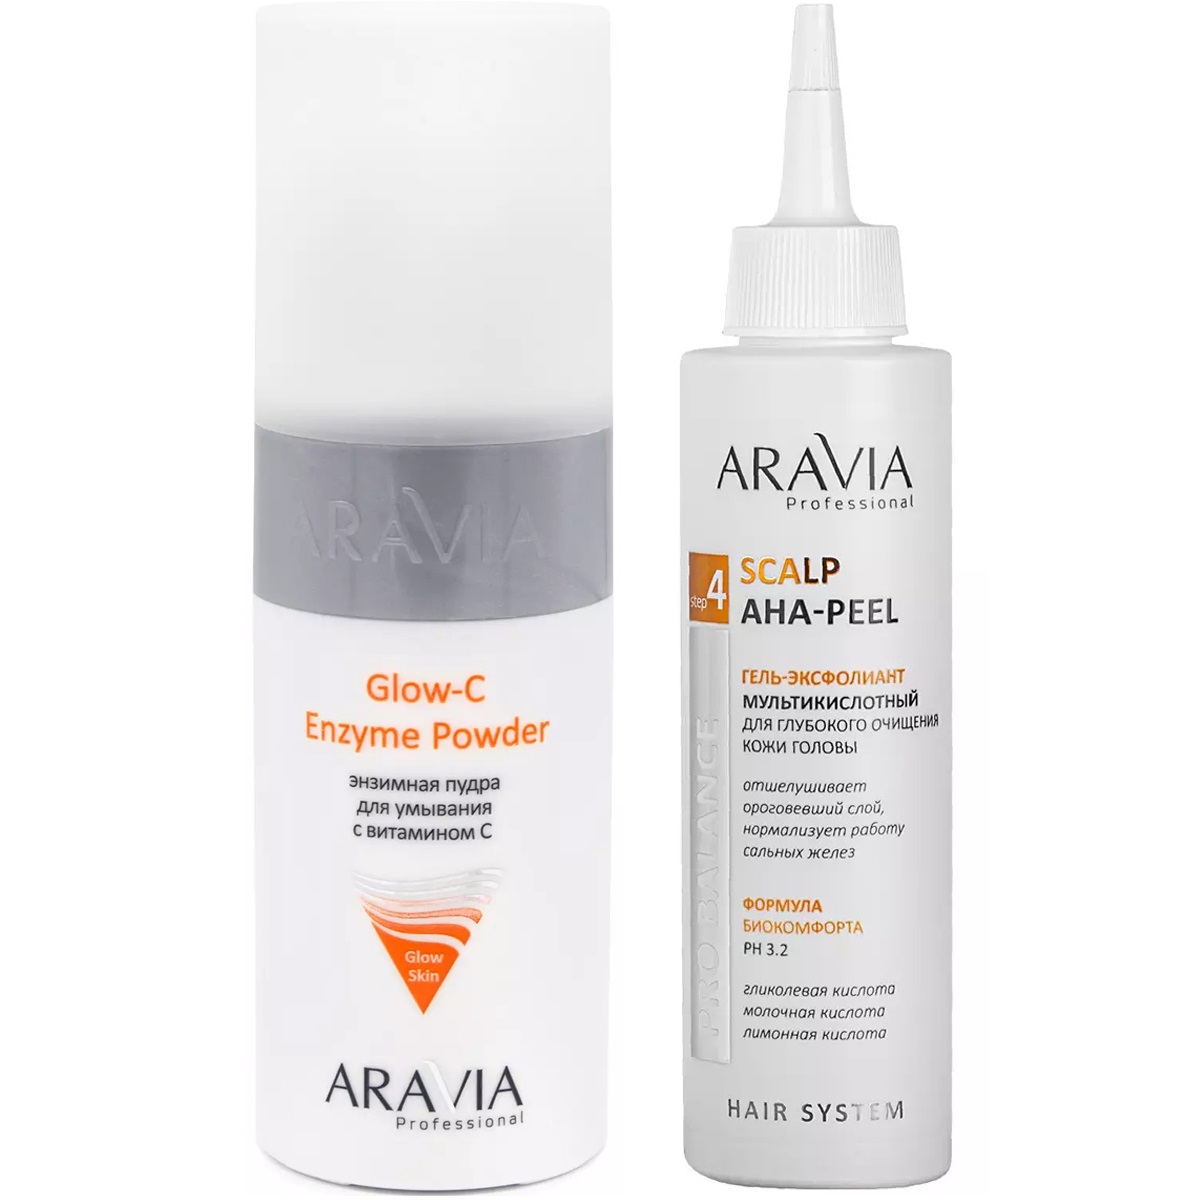 Aravia Professional Набор очищающий: энзимная пудра, 150 мл + гель-эксфолиант, 150 мл (Aravia Professional, Уход за лицом)